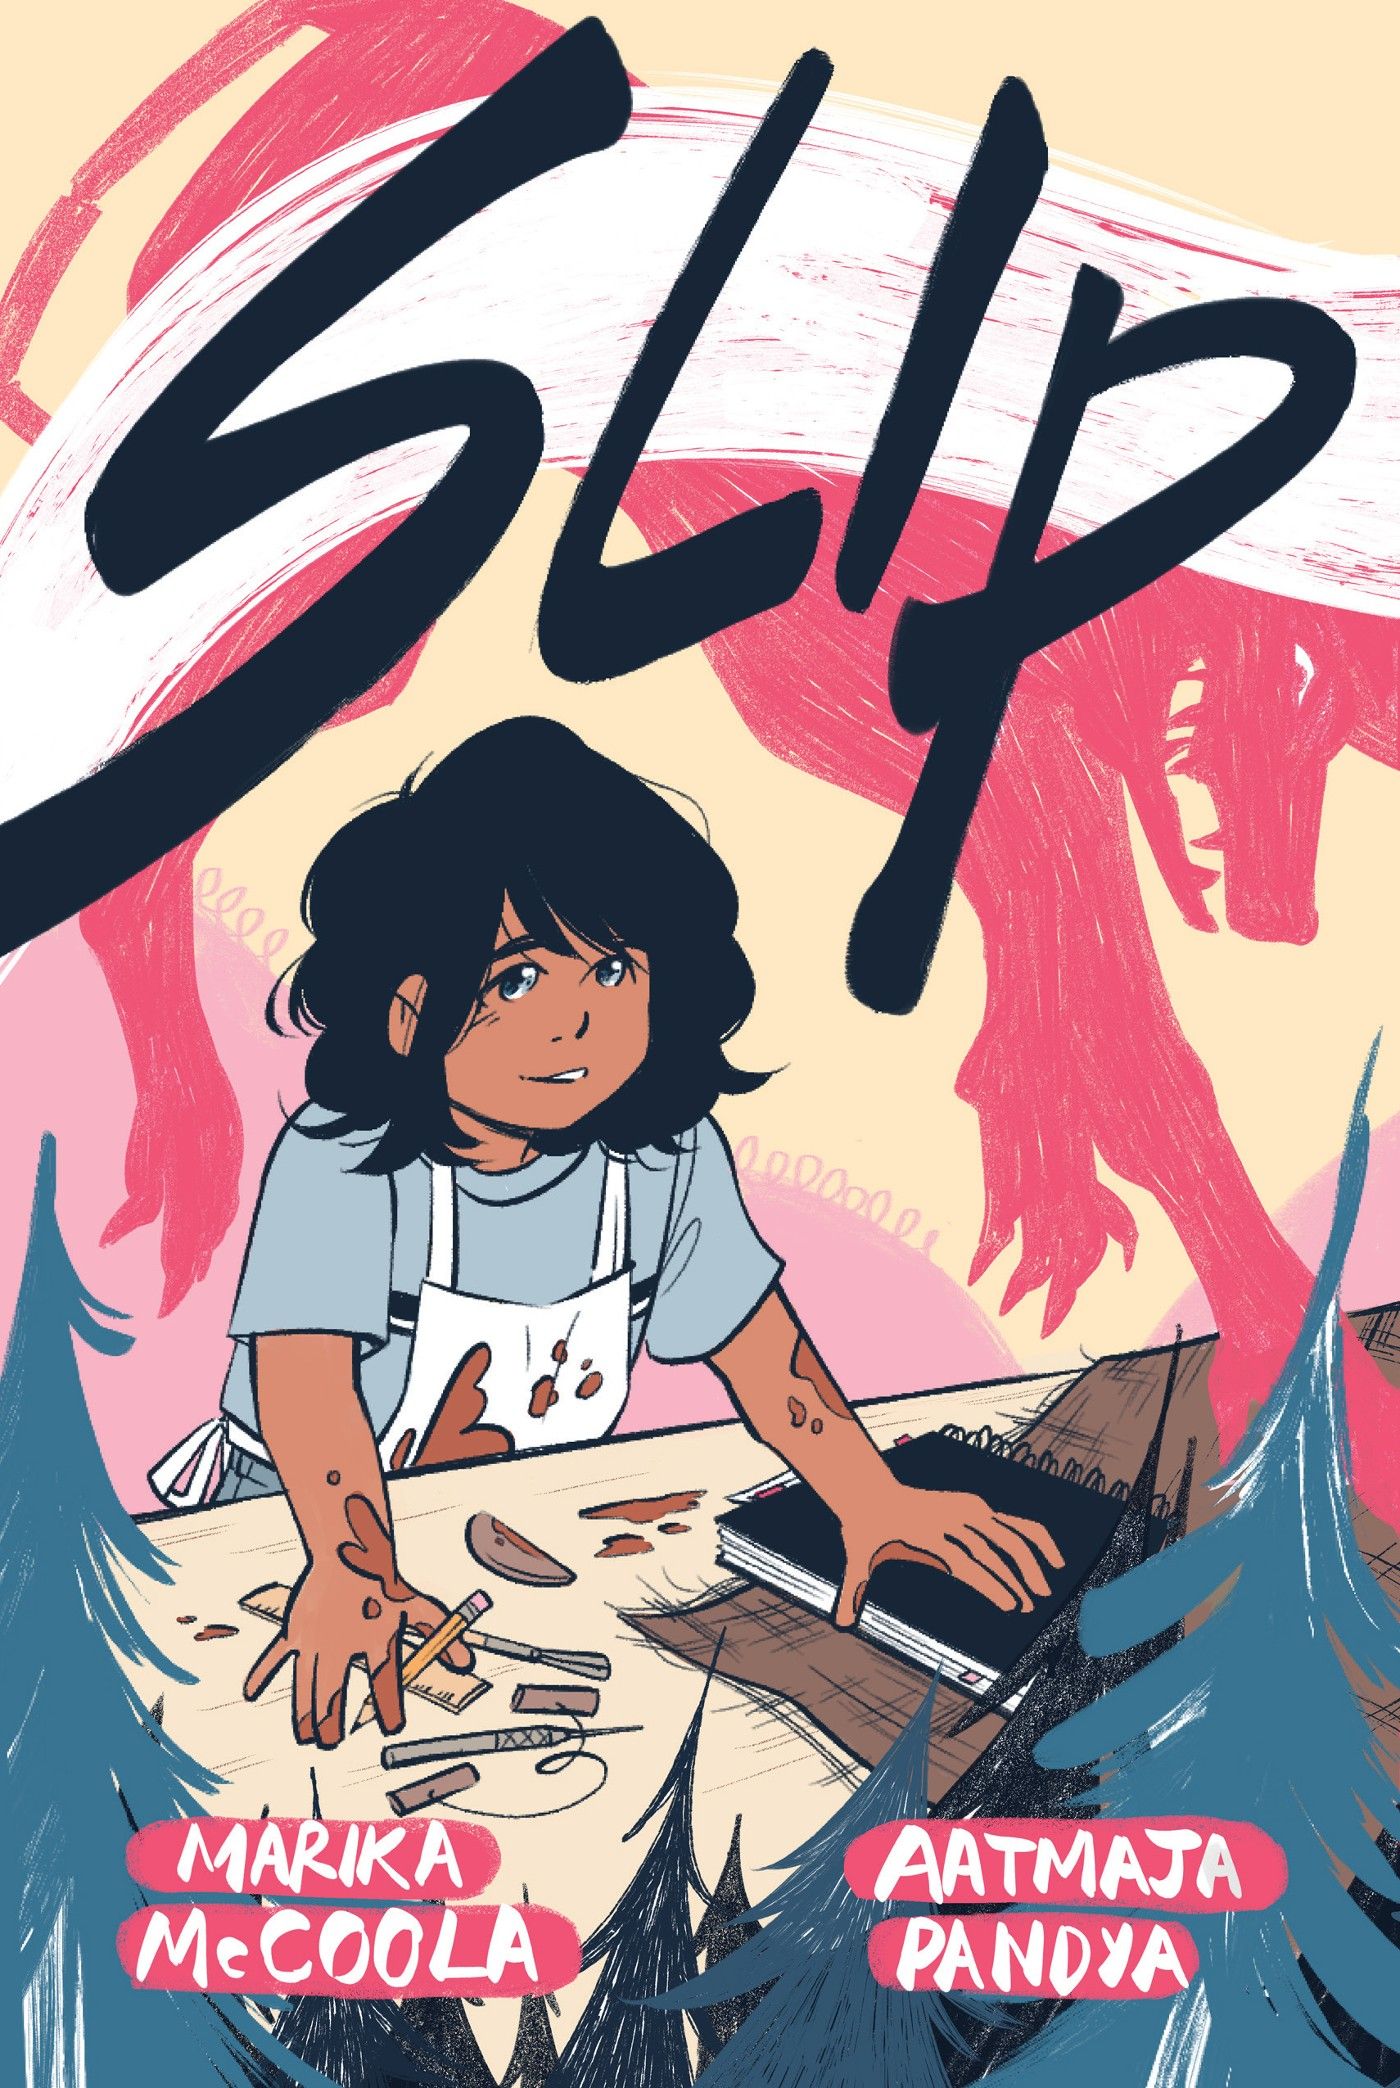 YA Graphic Novel SLIP Celebrates Love & Art in LGBTQ+ Fantasy